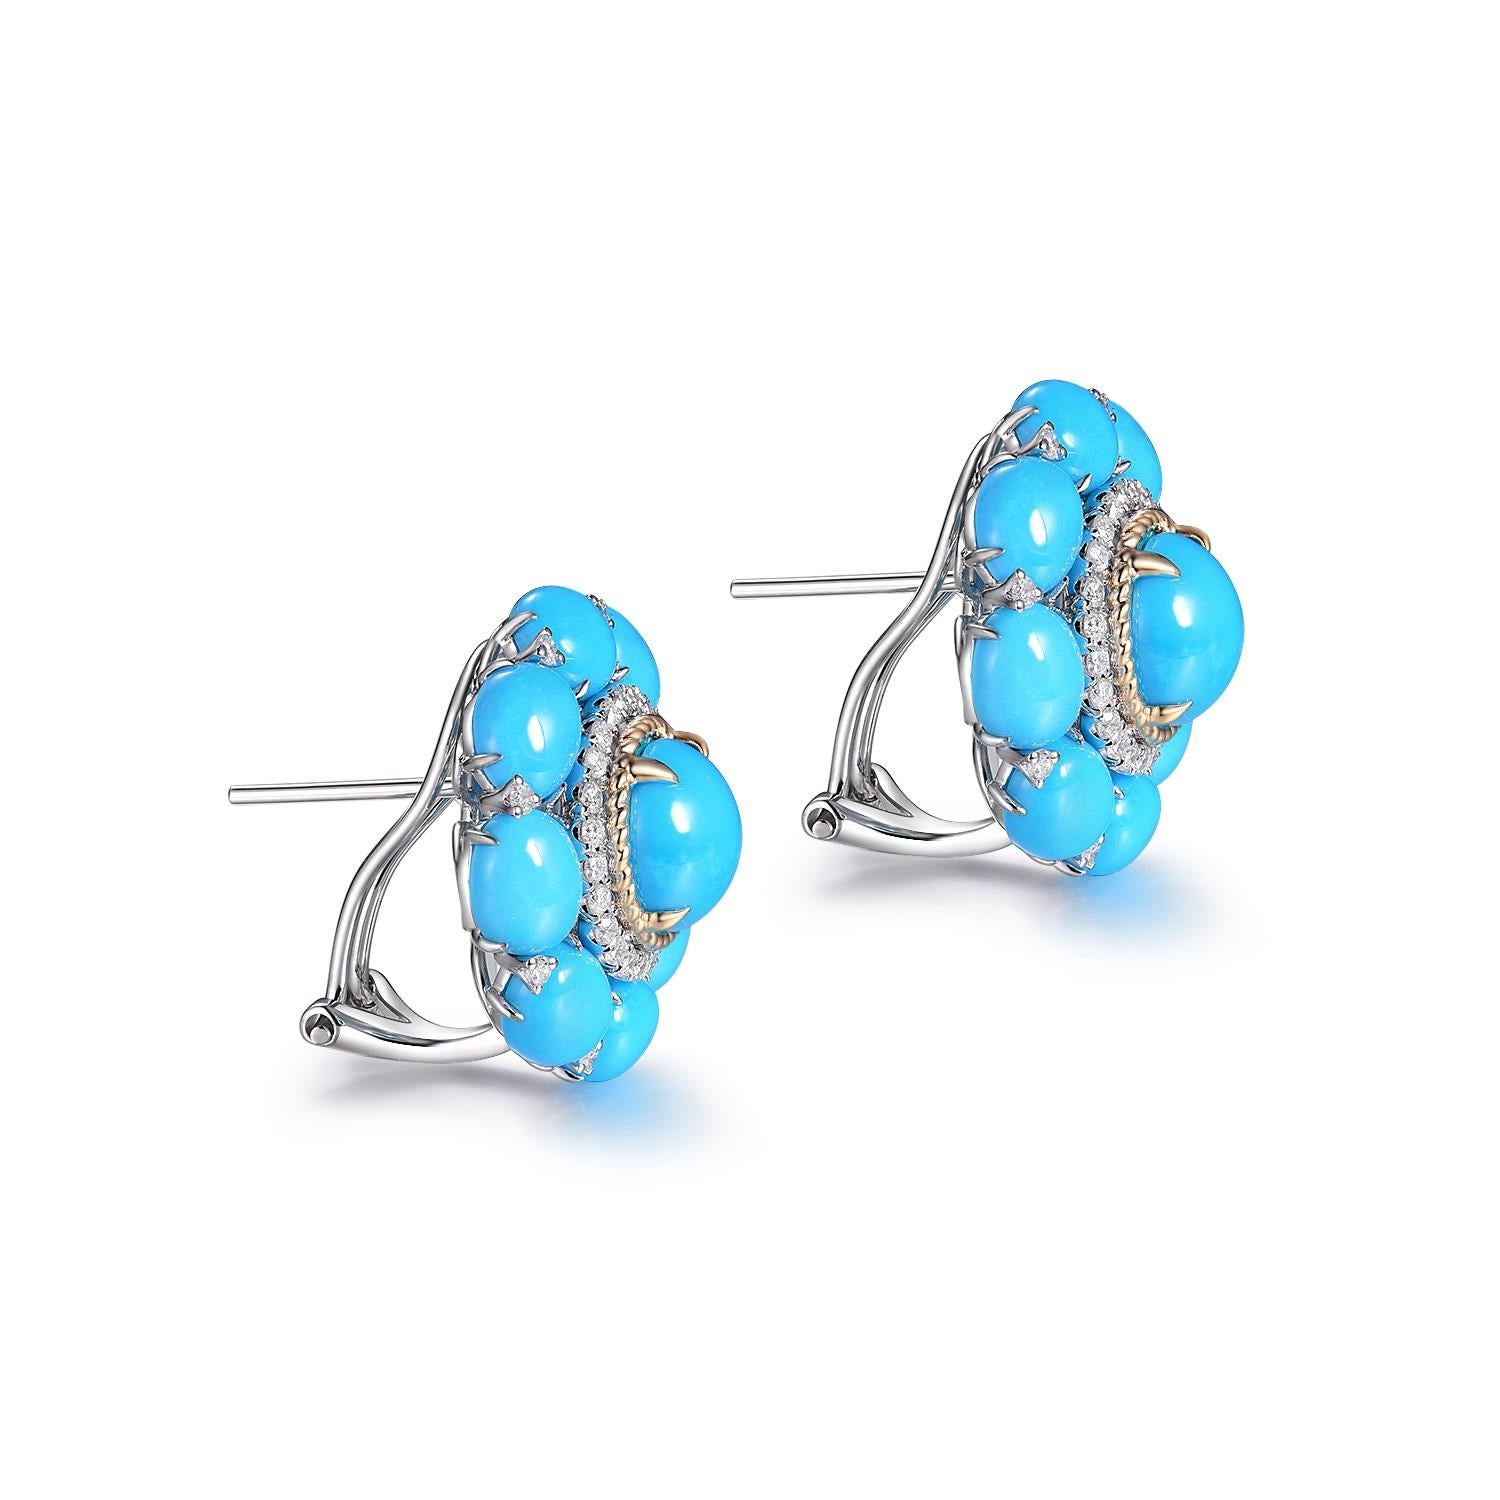 Los Pendientes Turquesa Diamante son un llamativo par de pendientes que muestran maravillosamente los vibrantes matices de la turquesa y el resplandeciente brillo de los diamantes. Elaborados en oro blanco y amarillo de 14 quilates, estos pendientes